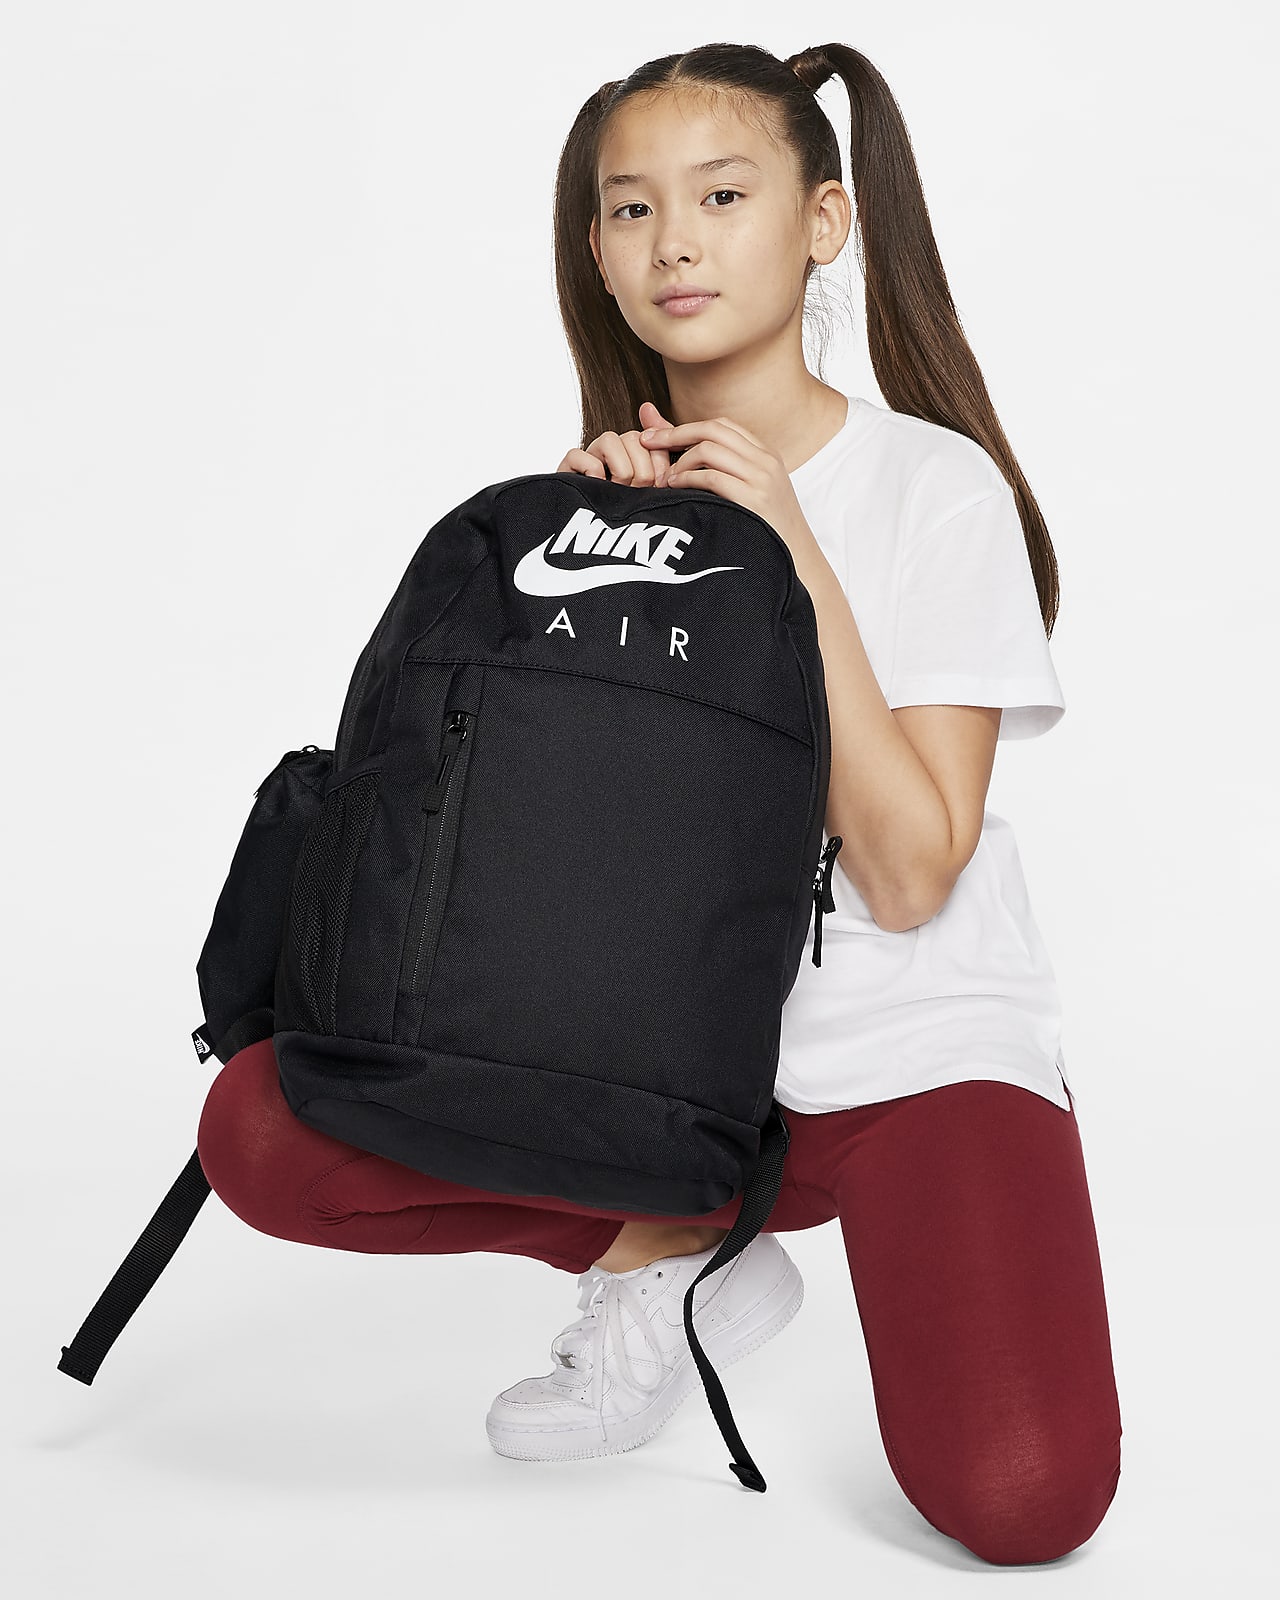 Nike-rygsæk til børn (20 L). DK